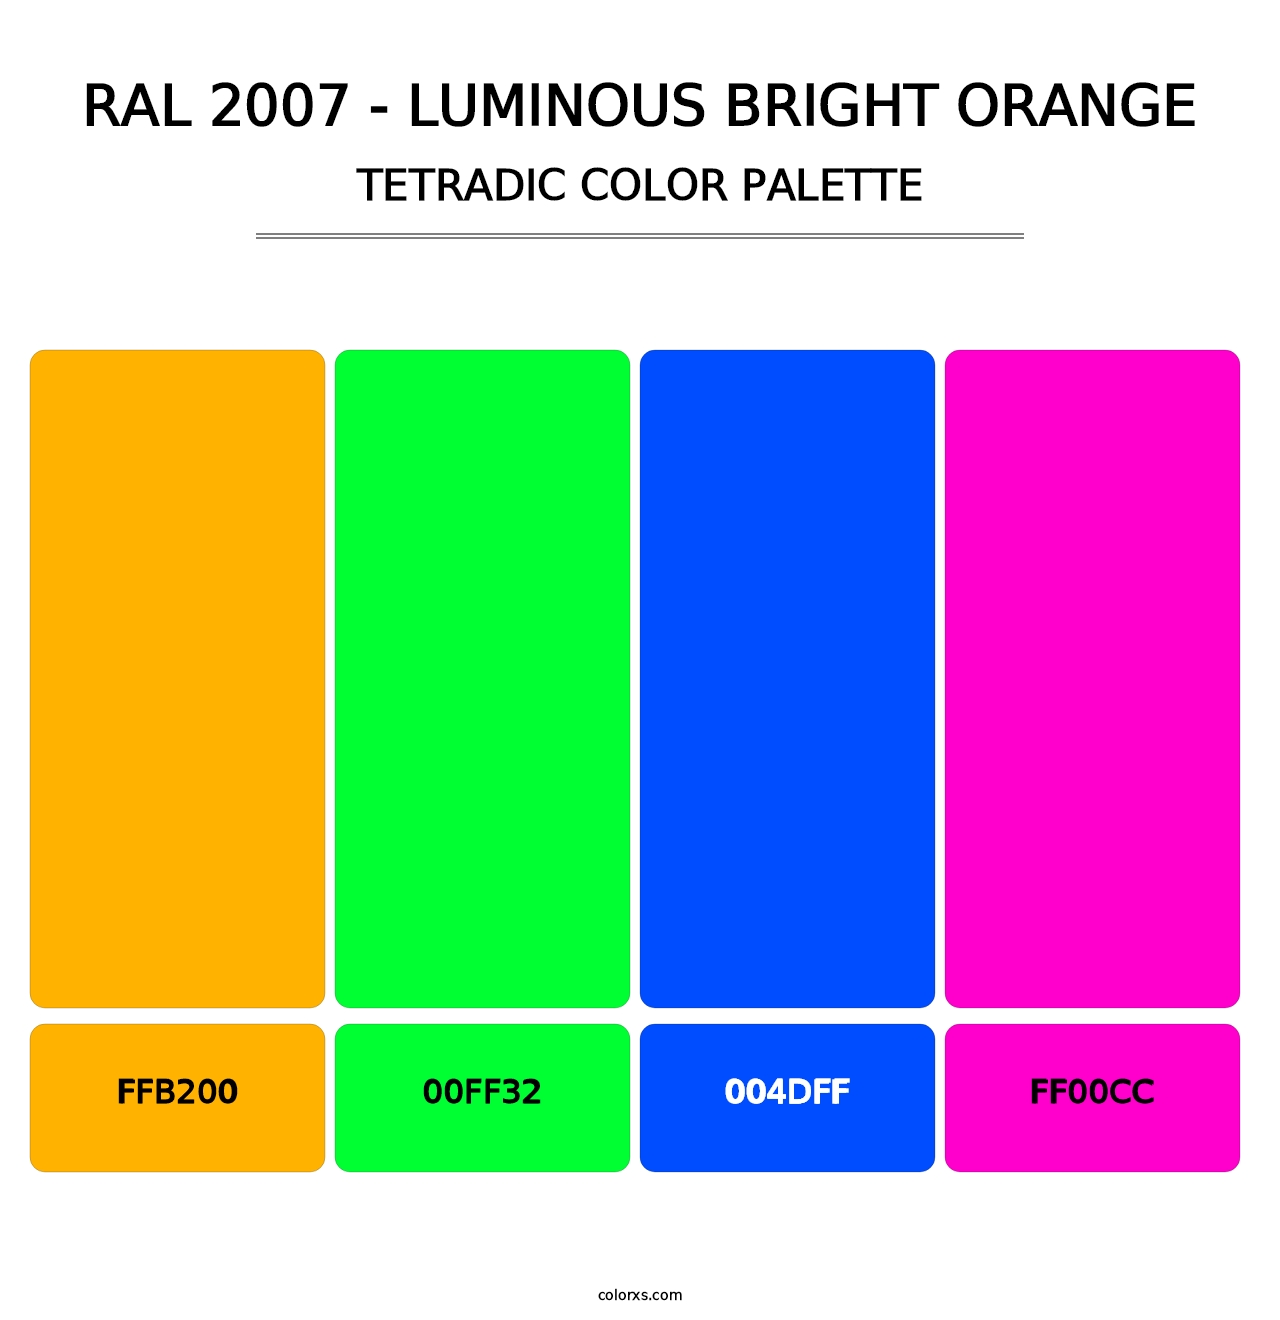 RAL 2007 - Luminous Bright Orange - Tetradic Color Palette